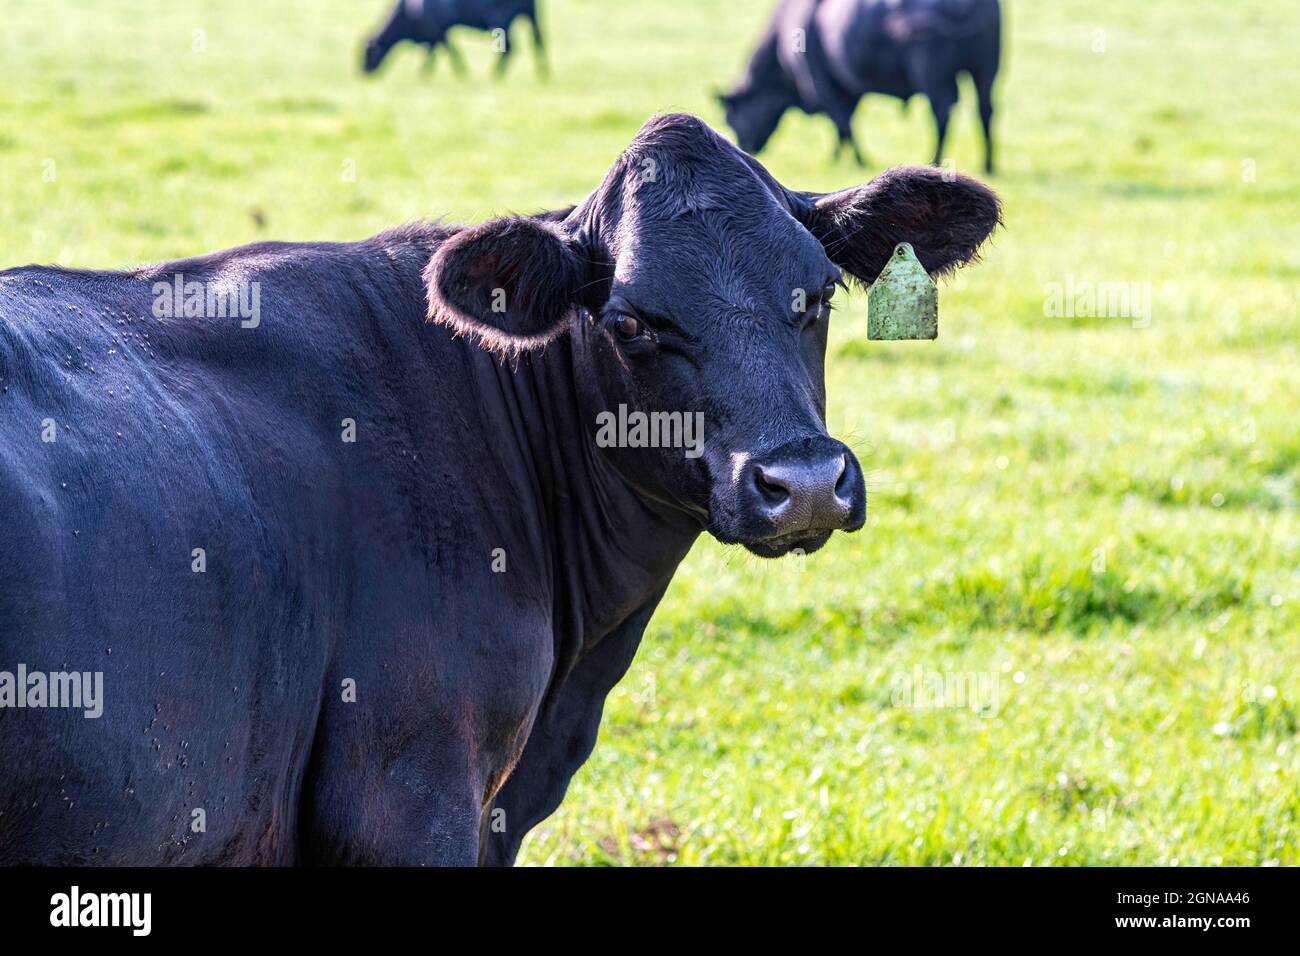 Primer plano de la vaca Angus negra mirando hacia atrás a la cámara con otro ganado pastando en el fondo. Foto de stock